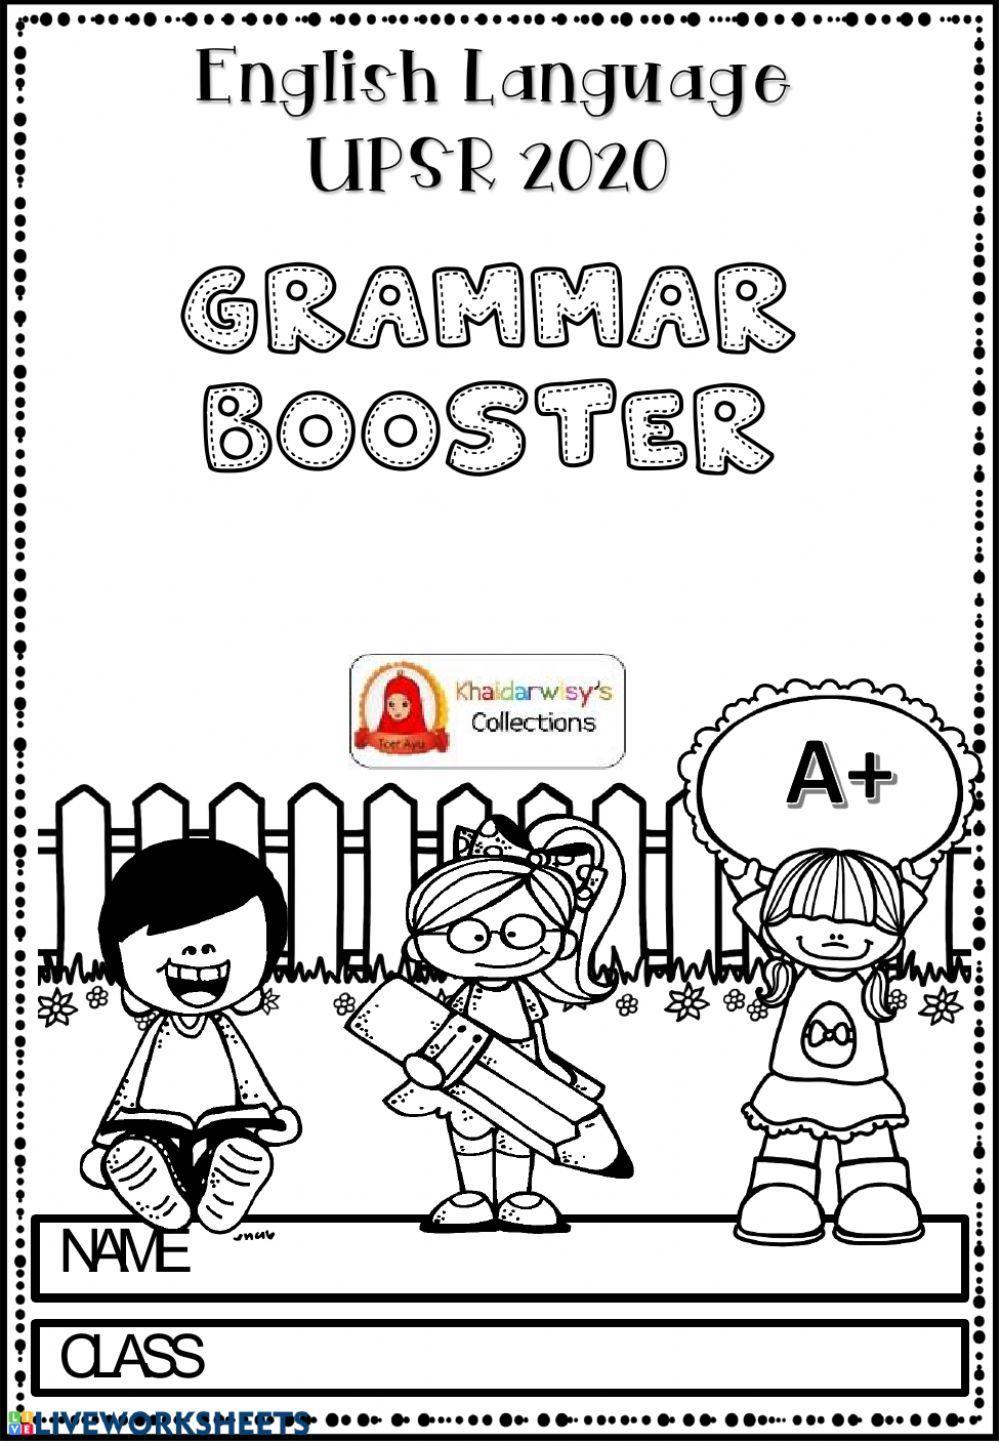 Grammar booster